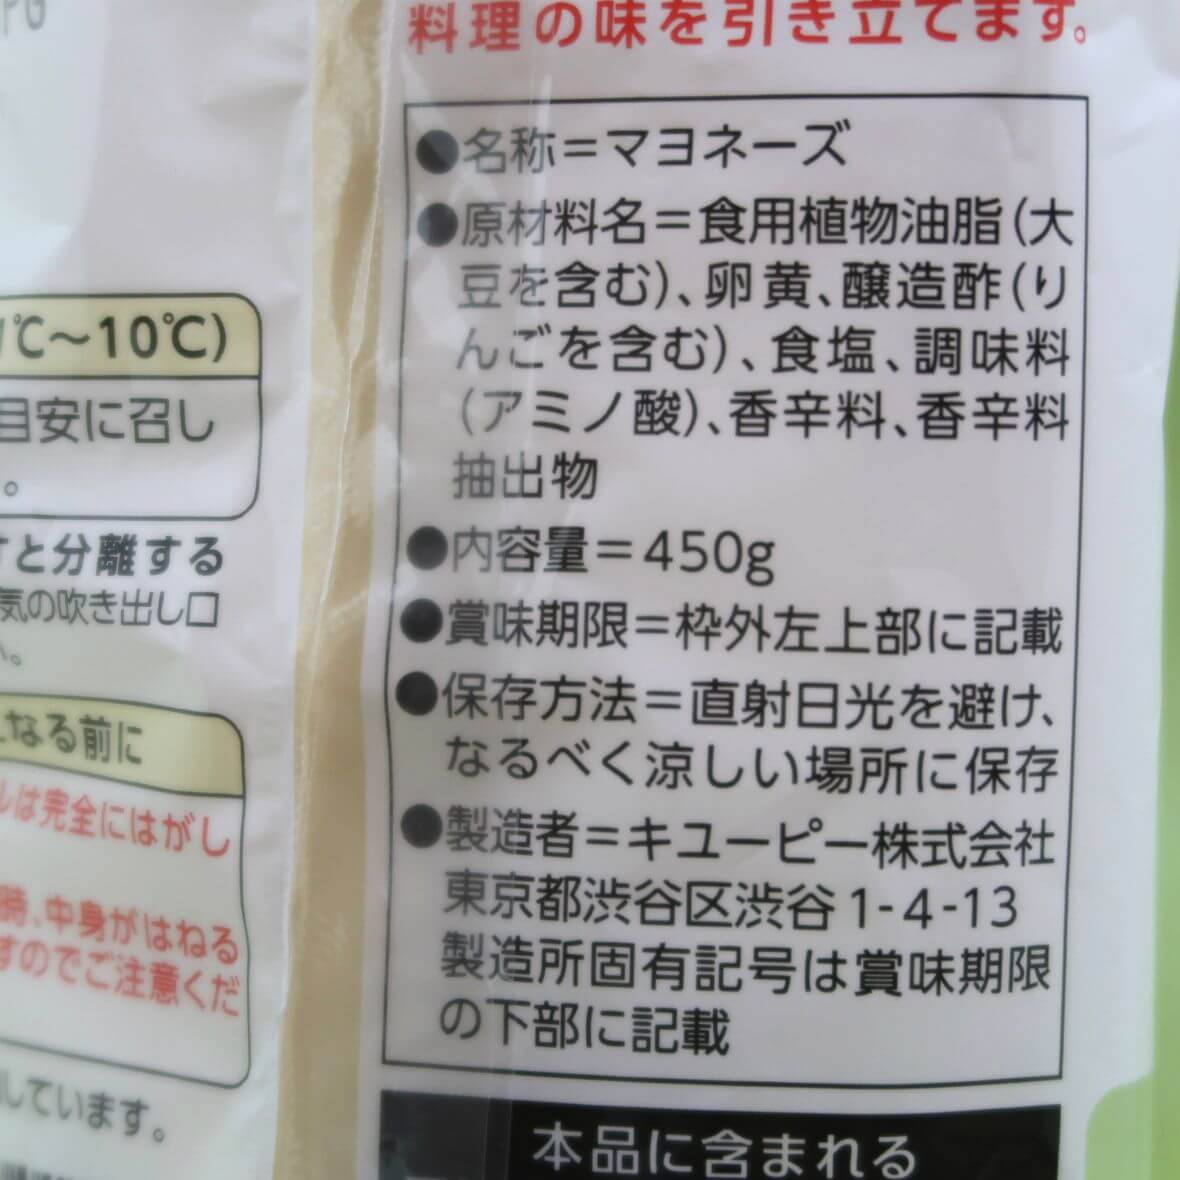 キューピー マヨネーズ 450g QP チューブ入り | 静岡県三島の食品問屋 